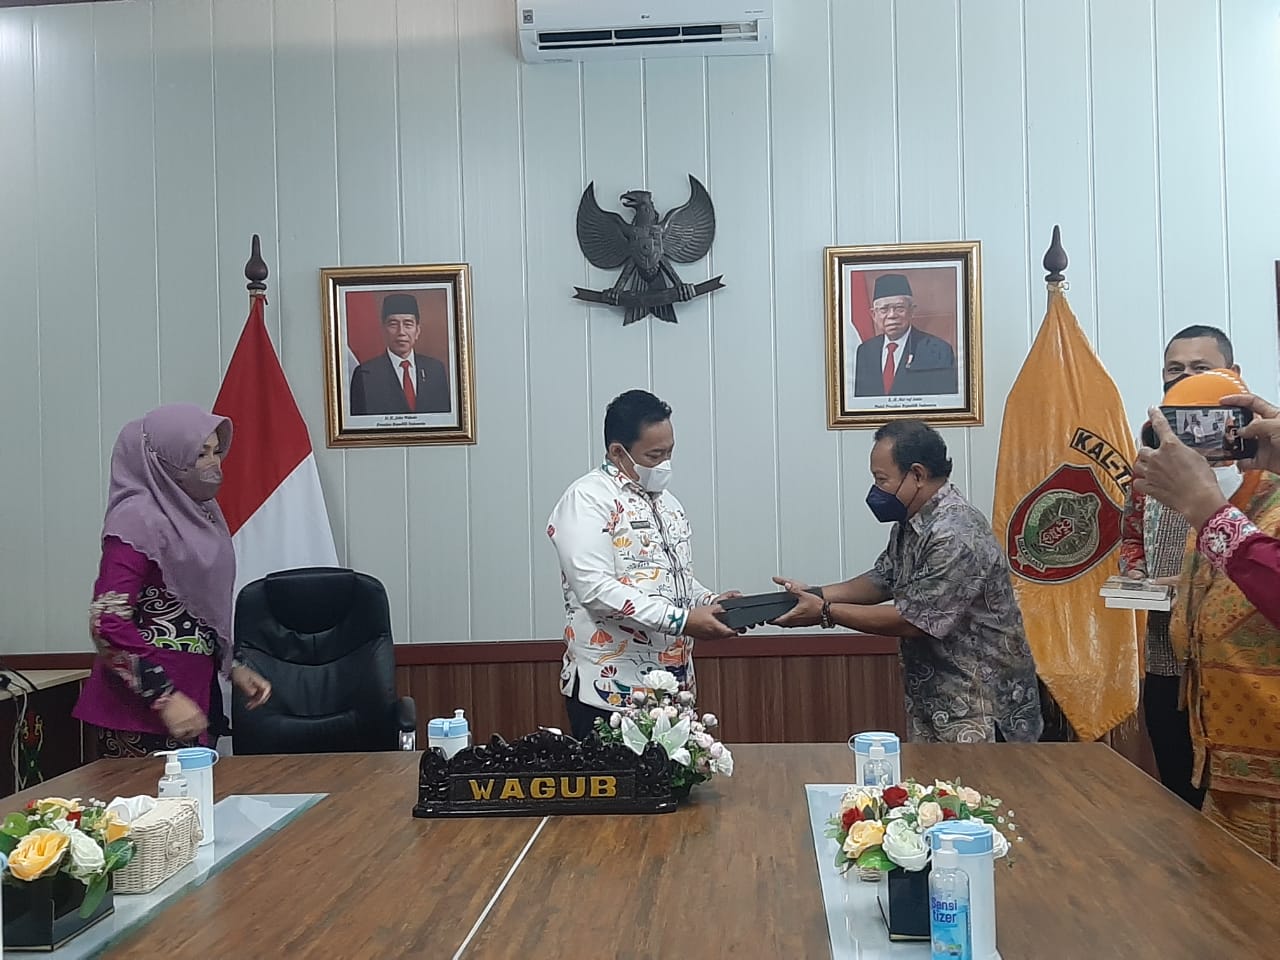 Wagub Edy Pratowo : Berdirinya Balai Pelestarian Kebudayaan Kalimantan Tengah, Satu Langkah Maju dalam Upaya Pelestarian Kearifan Lokal